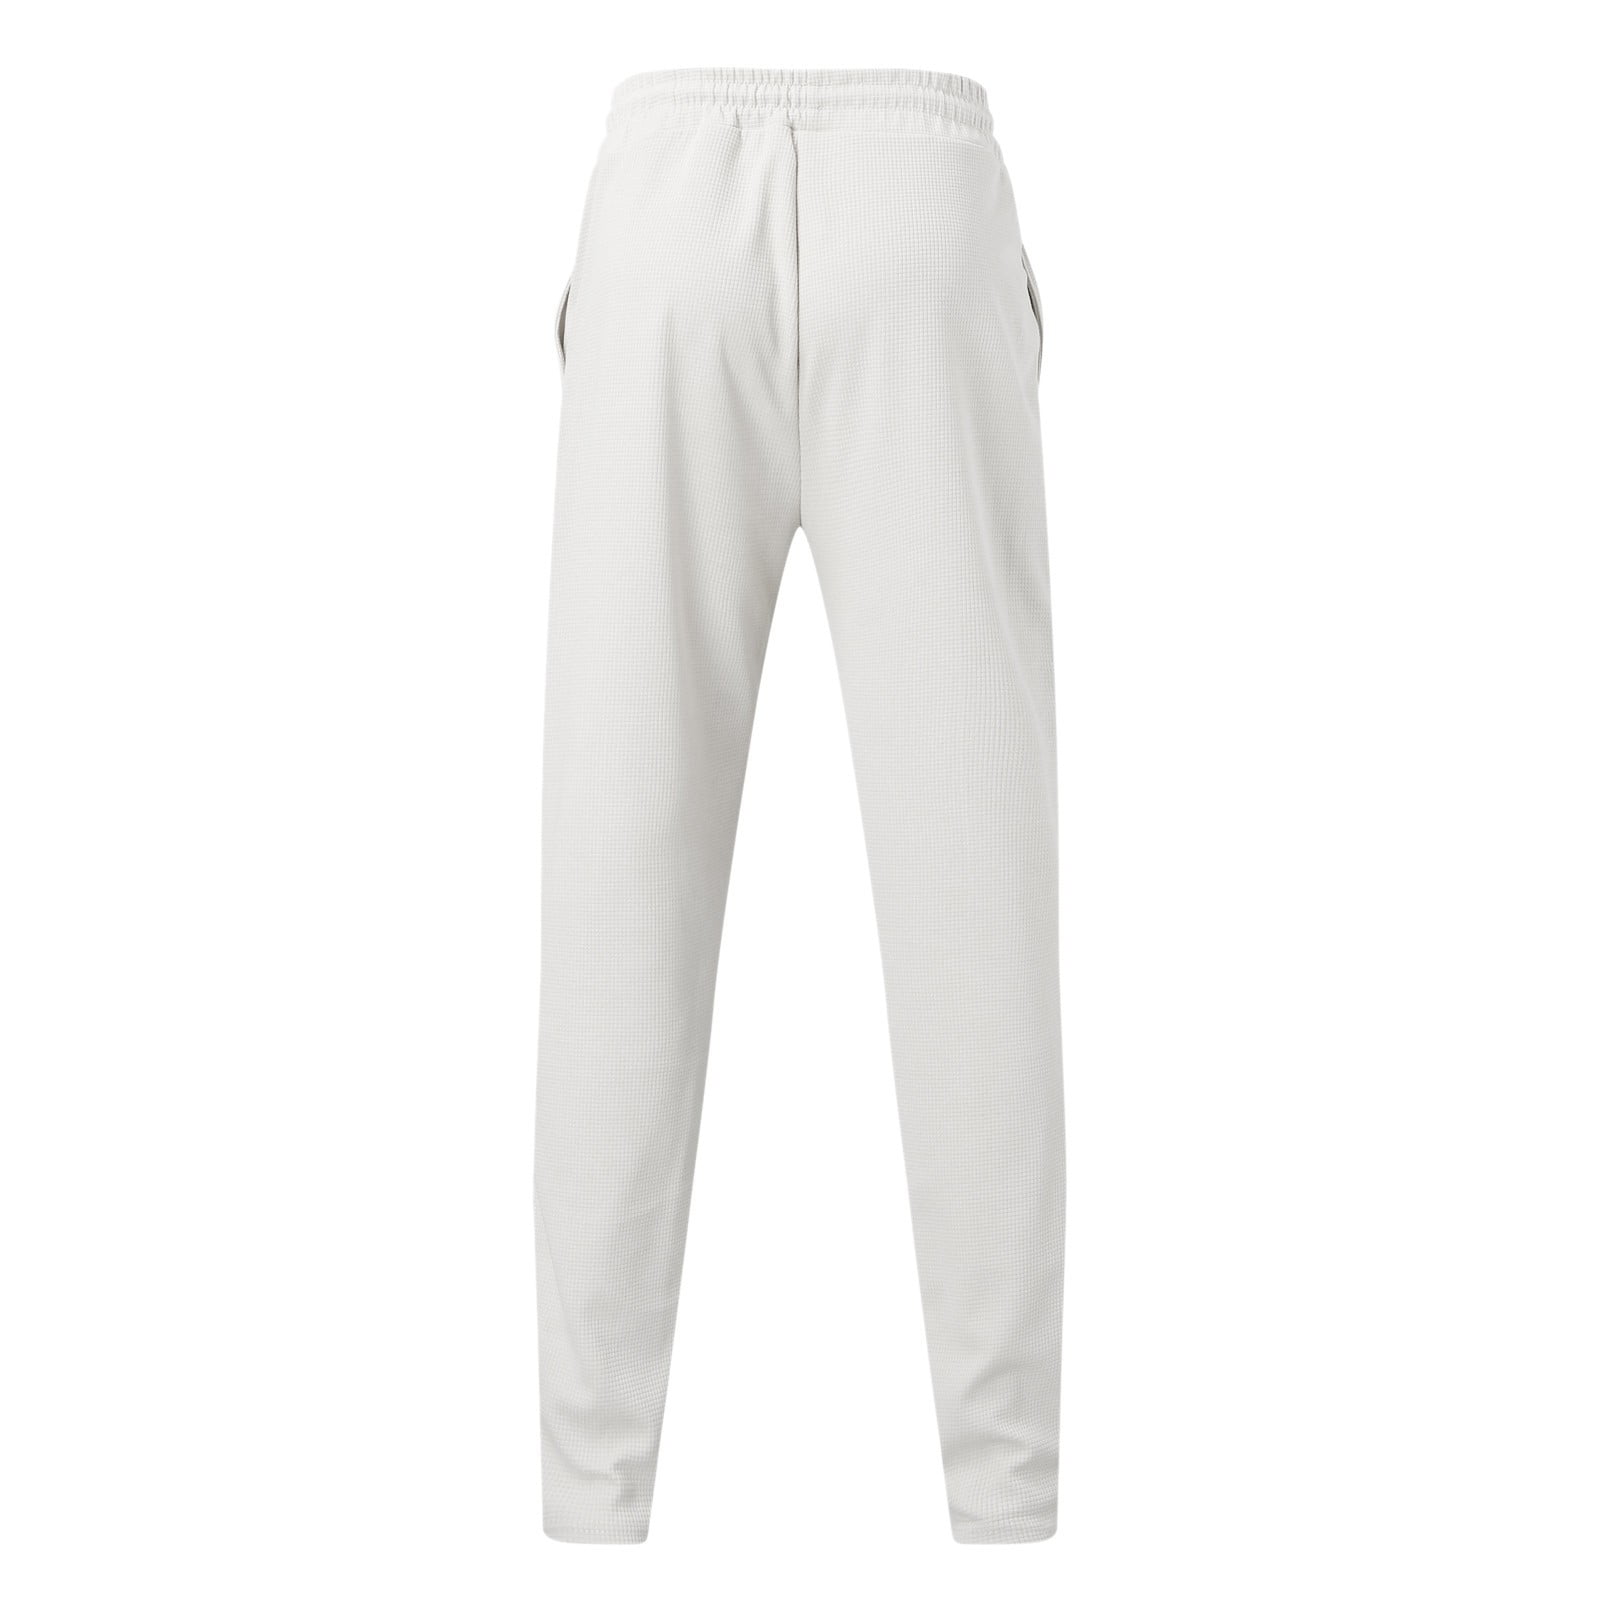 Khaki Mens Suit Male Autumn Winter Casual Plaid Two Piece Crew Neck T Shirt  Long Sleeve Pocket Pants Set